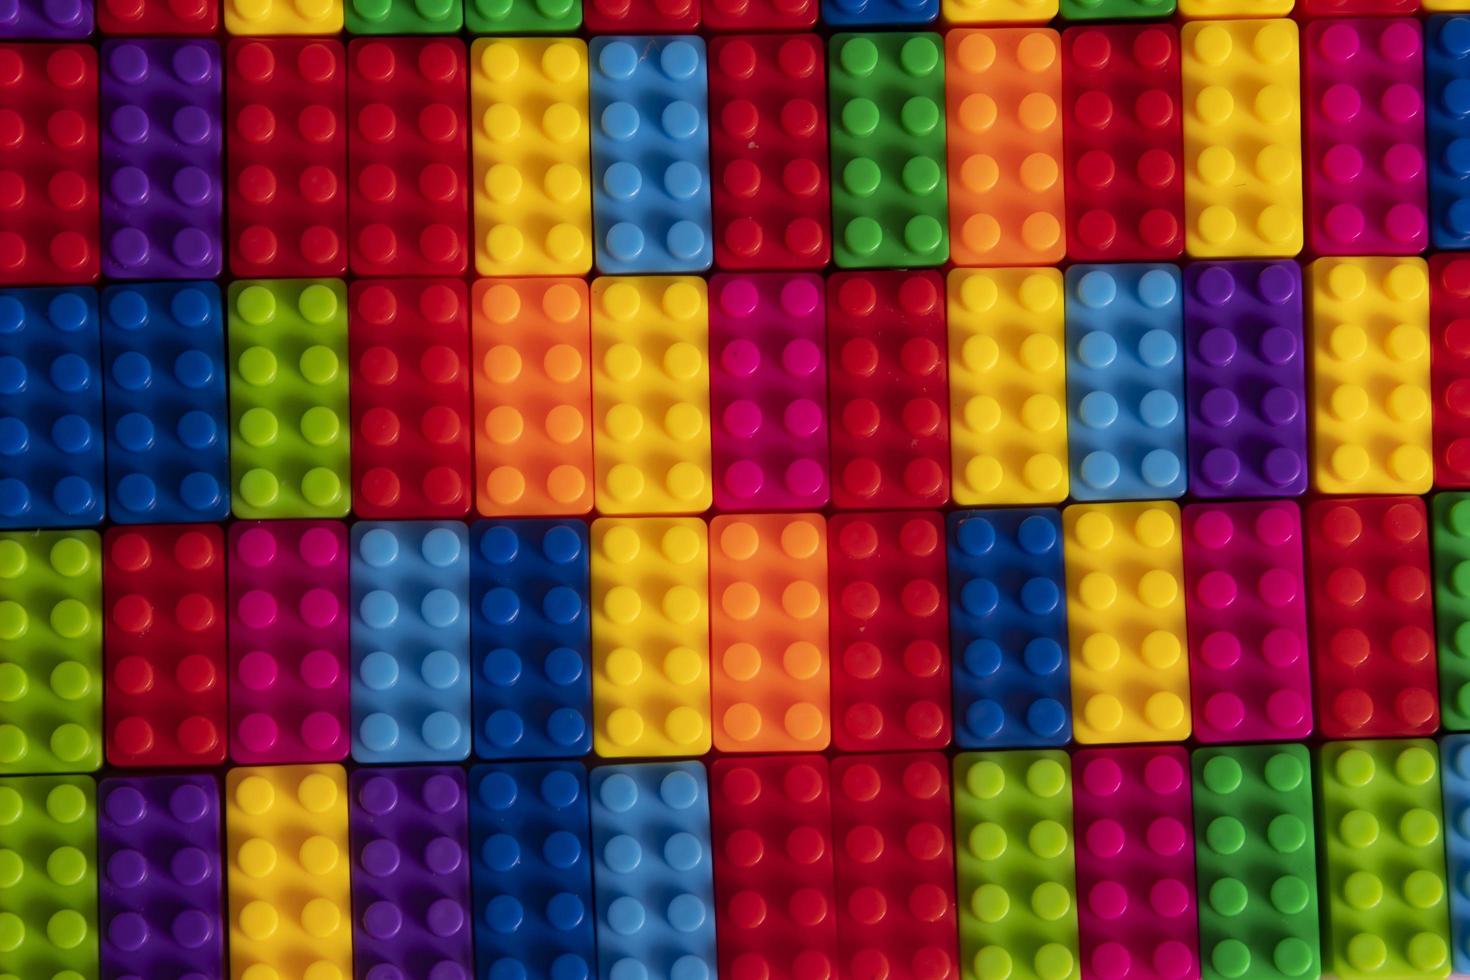 motifs de blocs de construction en plastique colorés isolés. jouet pour enfants photo